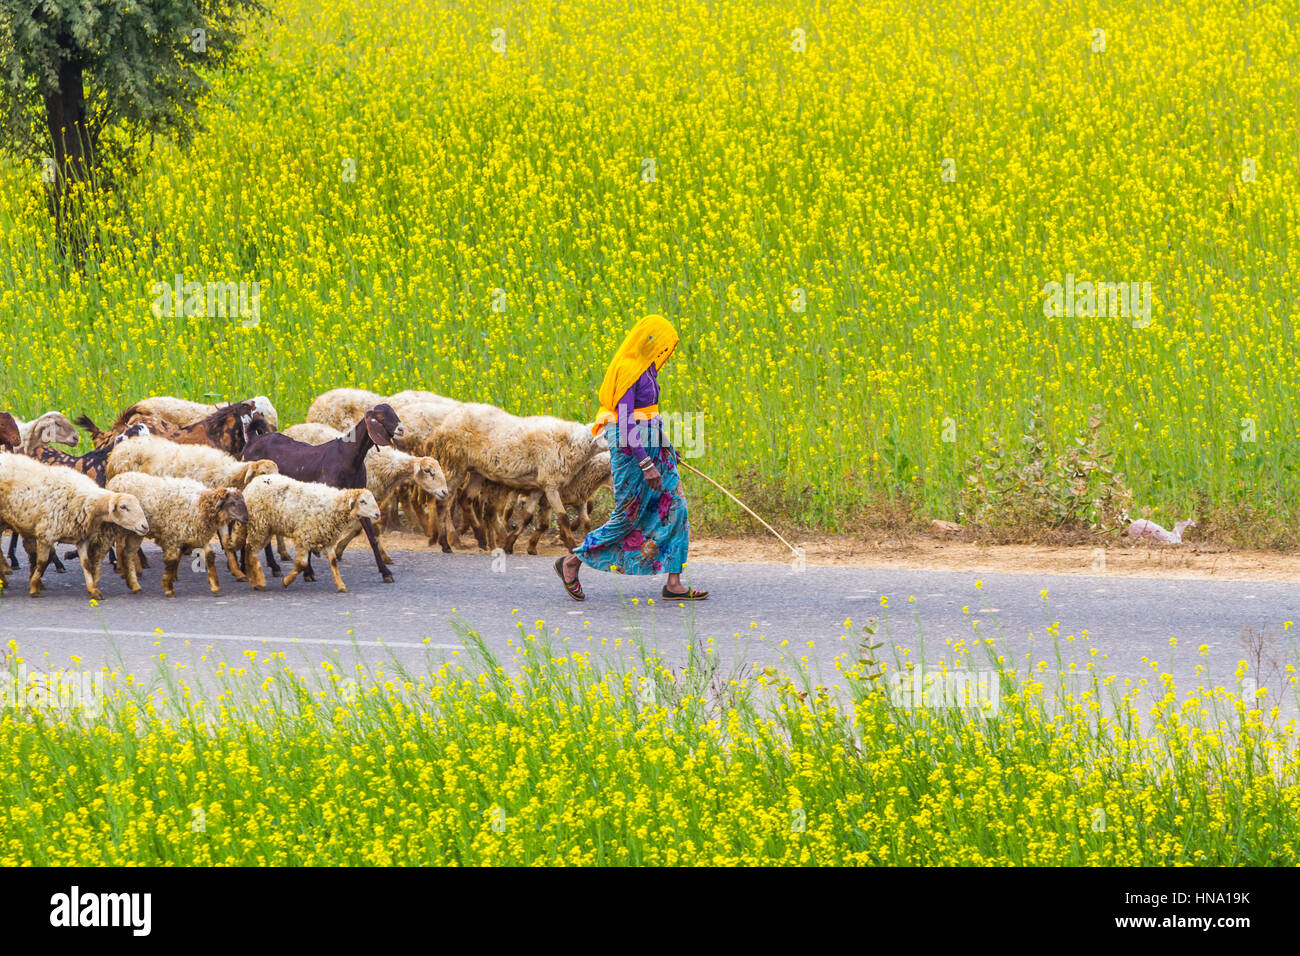 Abhaneri, Indien, 21. Januar 2017 - Dorfbewohner Schafe hüten, auf eine Straße vorbei an Senf Felder in Abhaneri, Rajasthan, Indien. Stockfoto